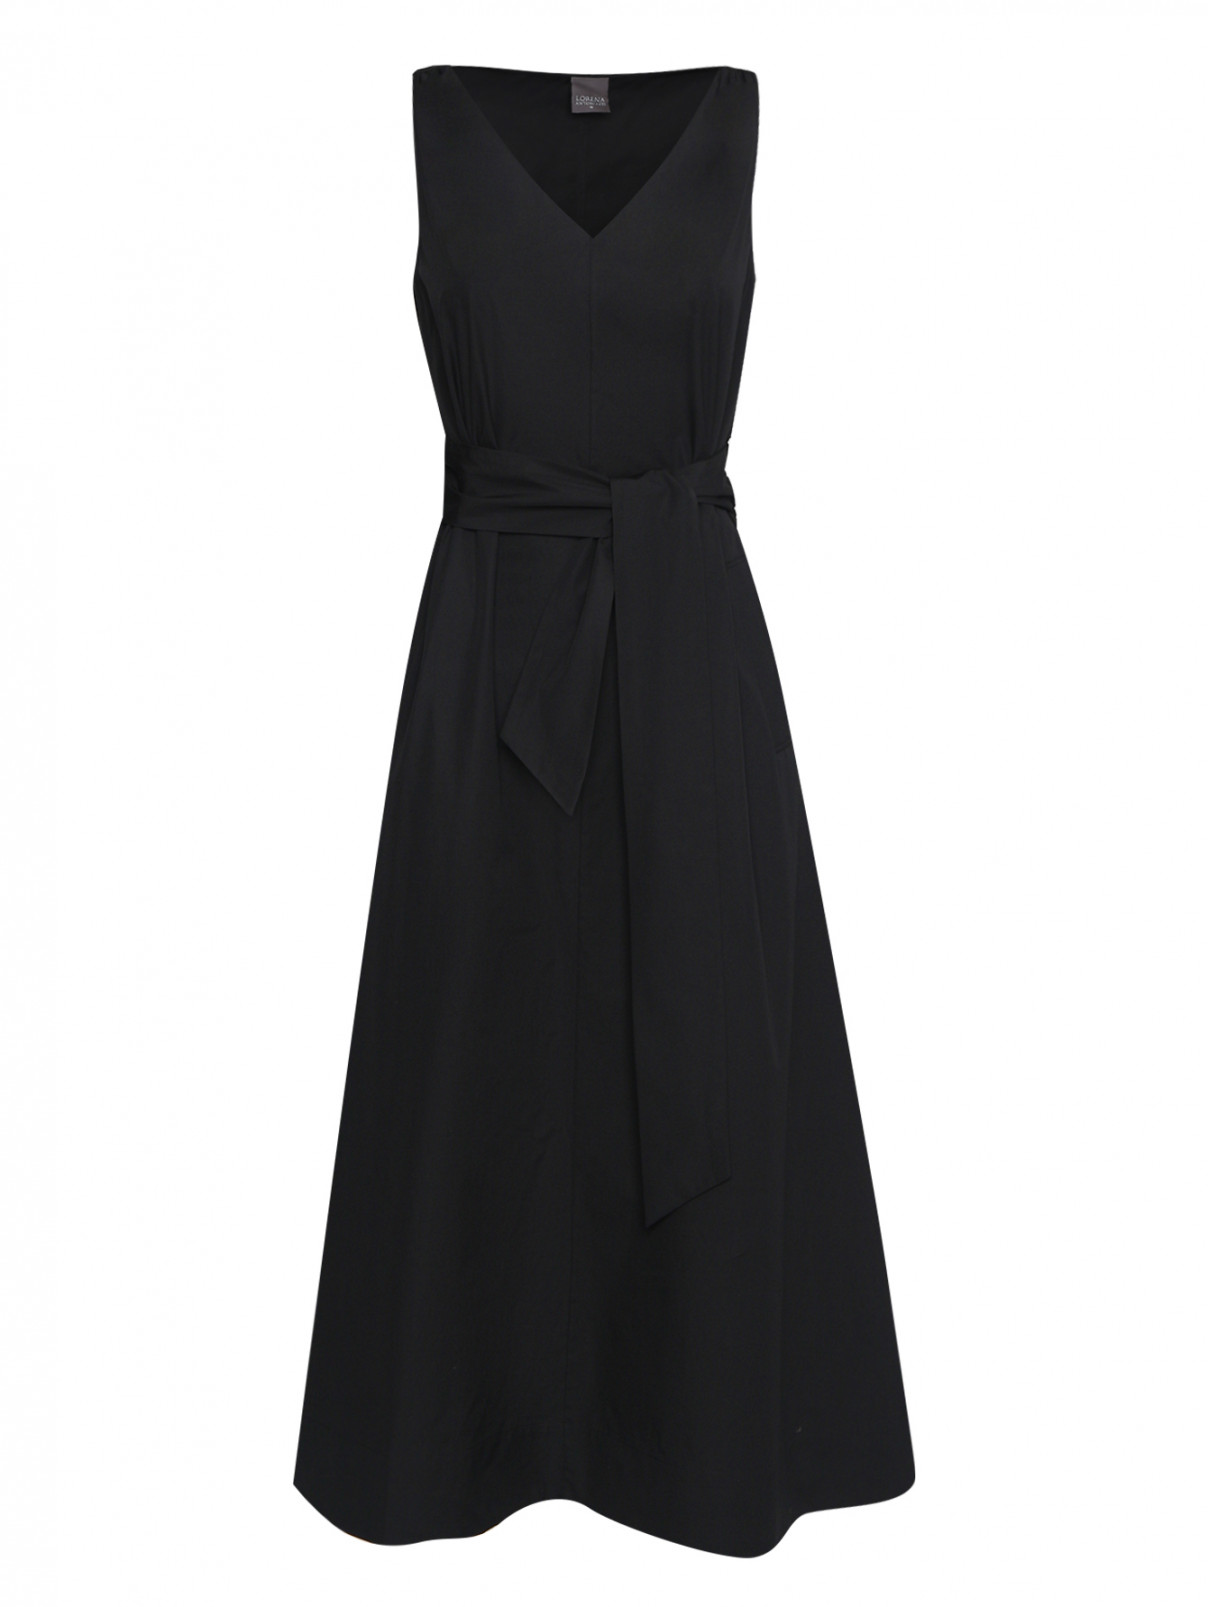 Платье из хлопка с поясом Lorena Antoniazzi  –  Общий вид  – Цвет:  Черный